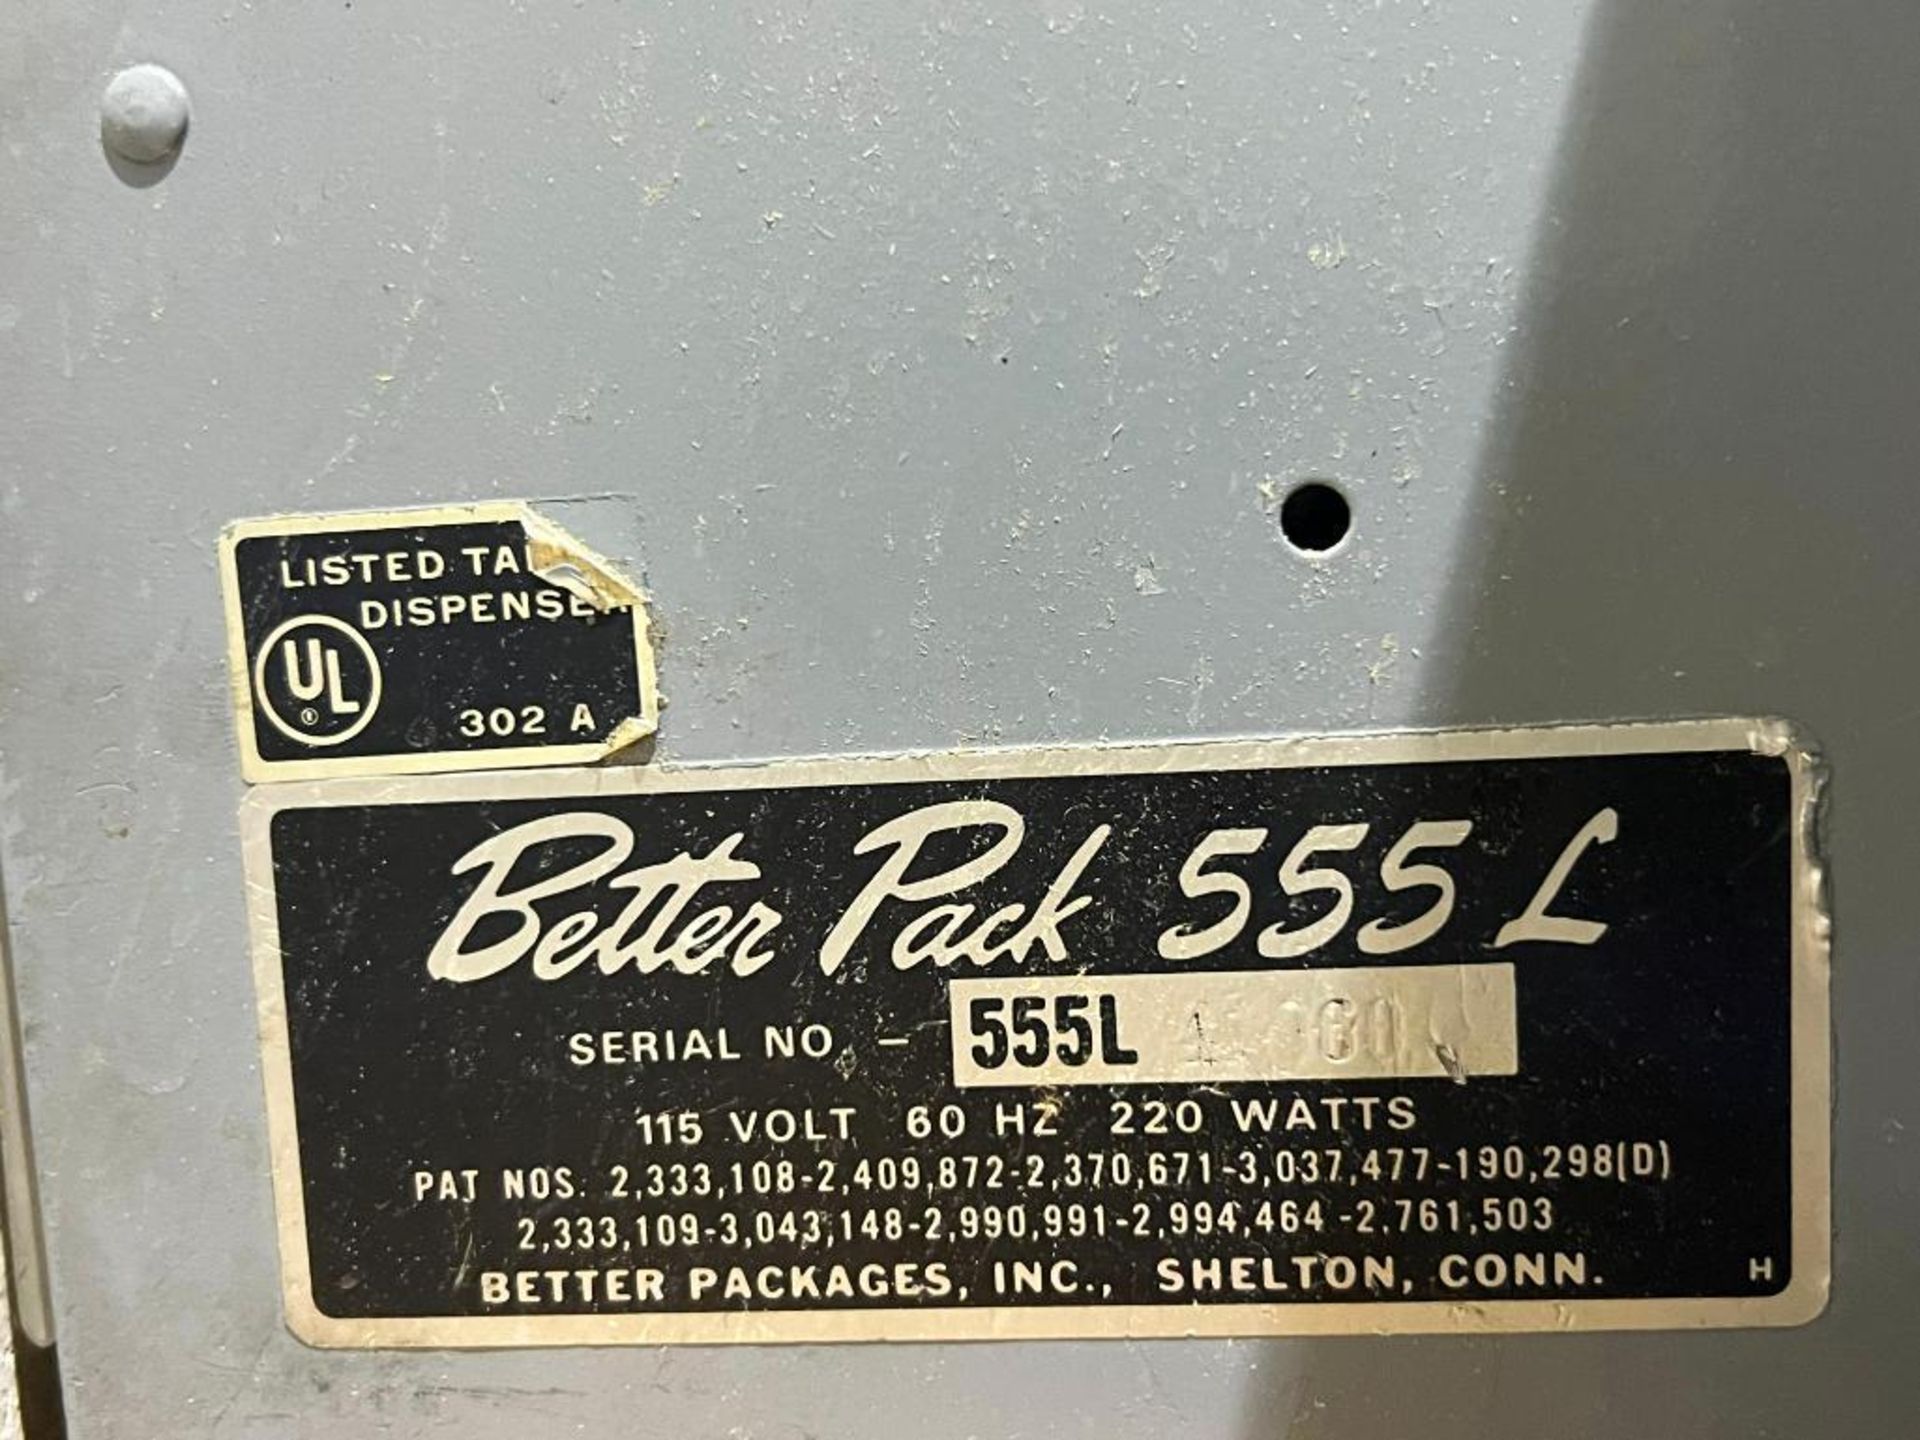 Better-Pack Model 555l Tape Dispenser - Image 4 of 4